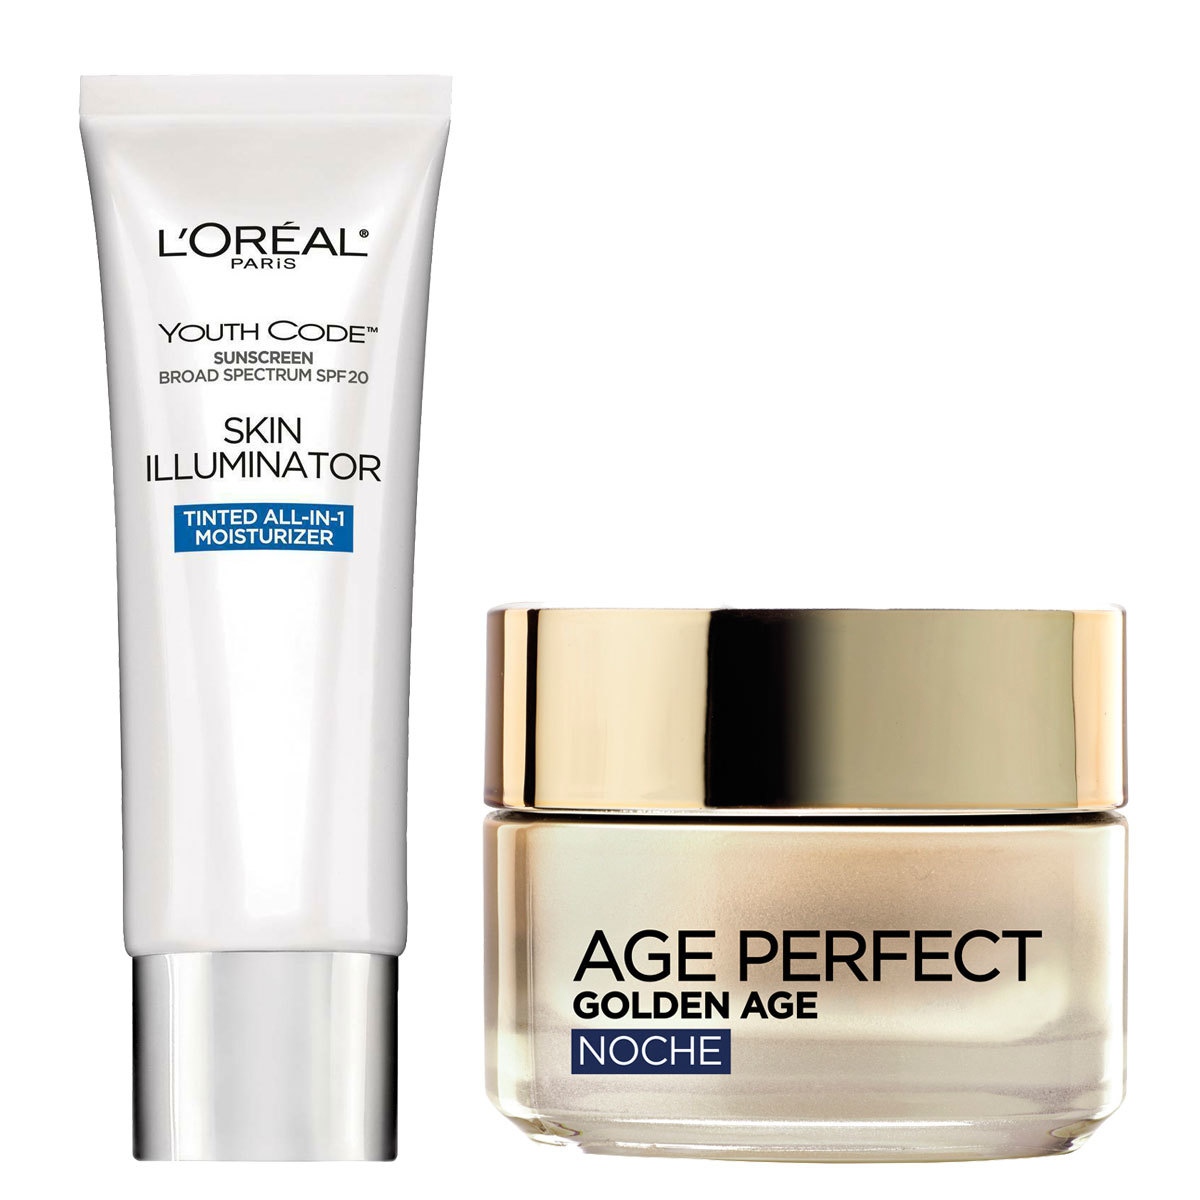 Dos de los básicos de Susan Sarandon: Youth Code Skin Illuminator Tinted All-In-1 Moisturizer y crema de noche Age Perfect, ambos de L'Oréal Paris.